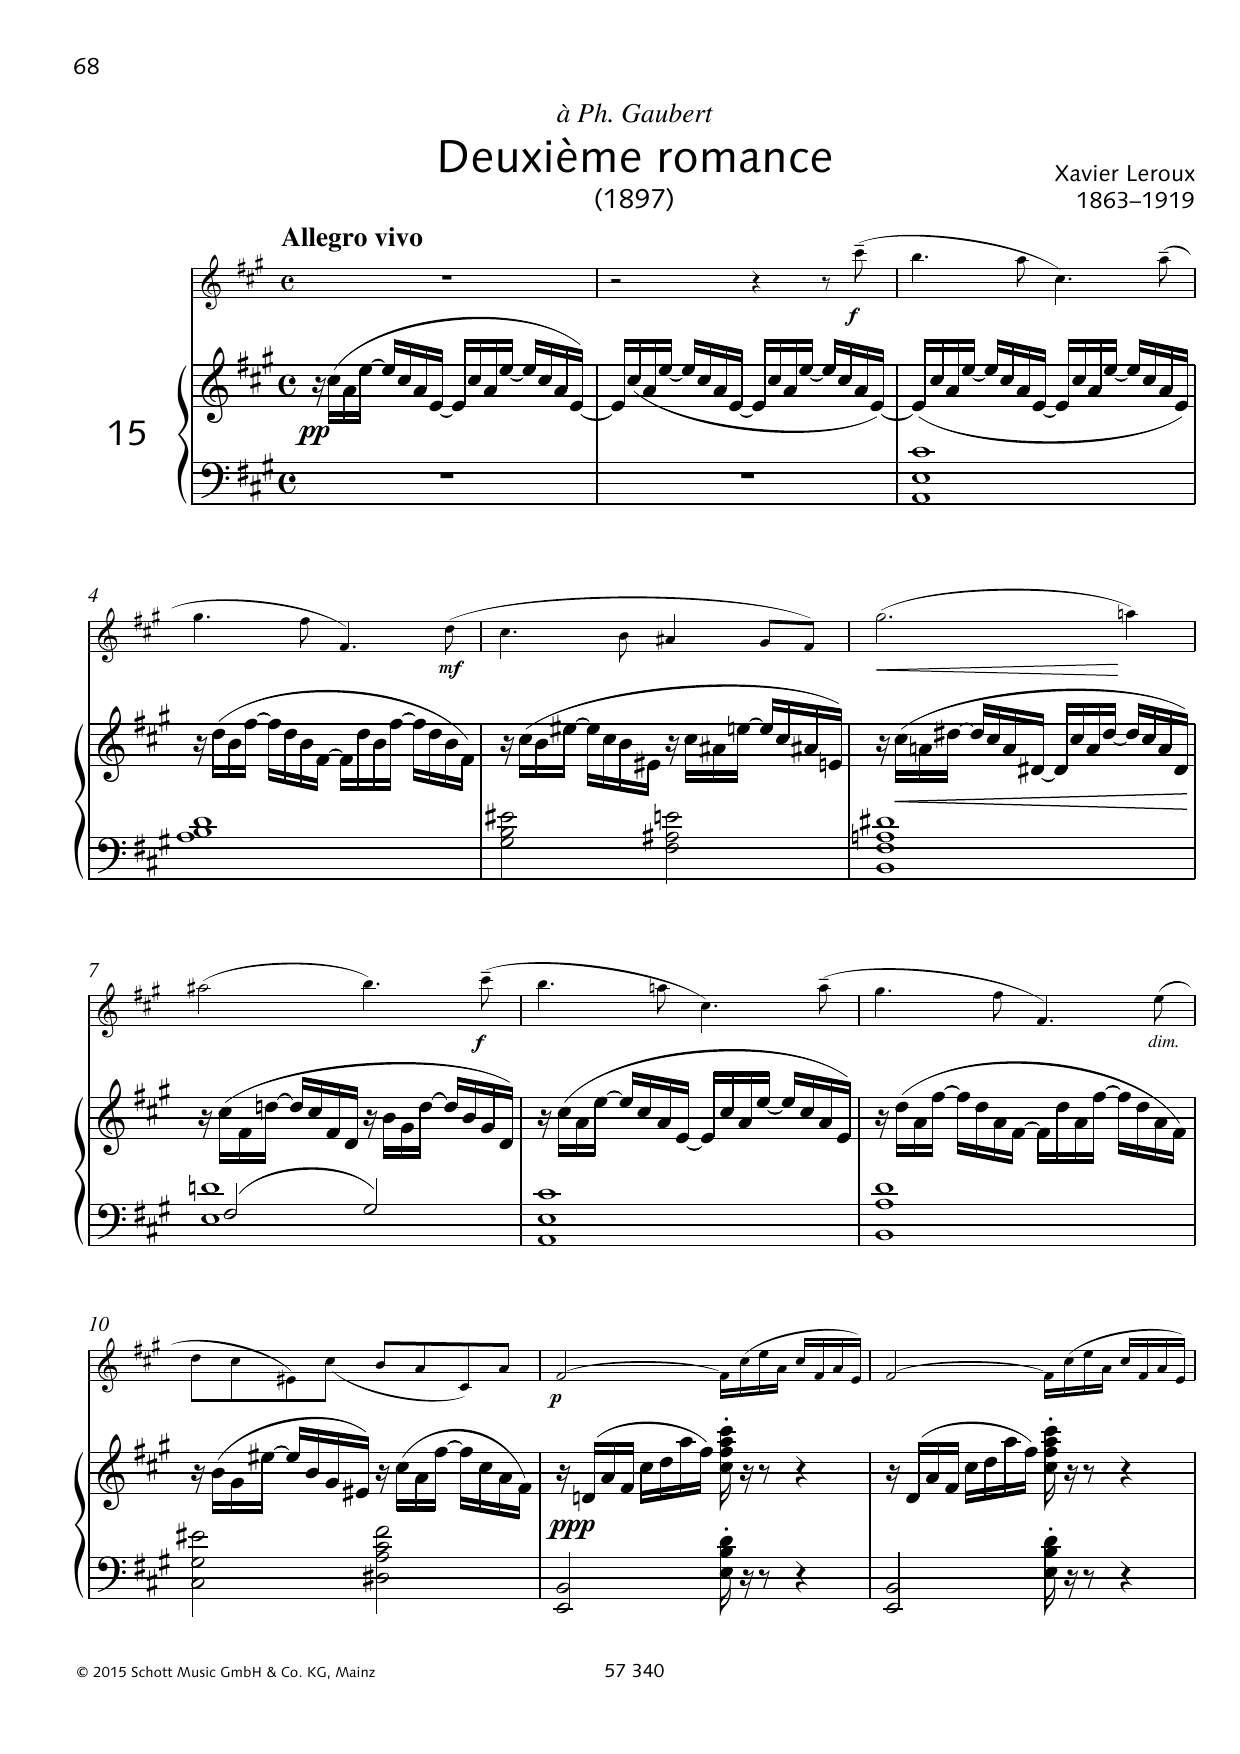 Gabriel Fauré Deuxième romance Sheet Music Notes & Chords for Woodwind Solo - Download or Print PDF